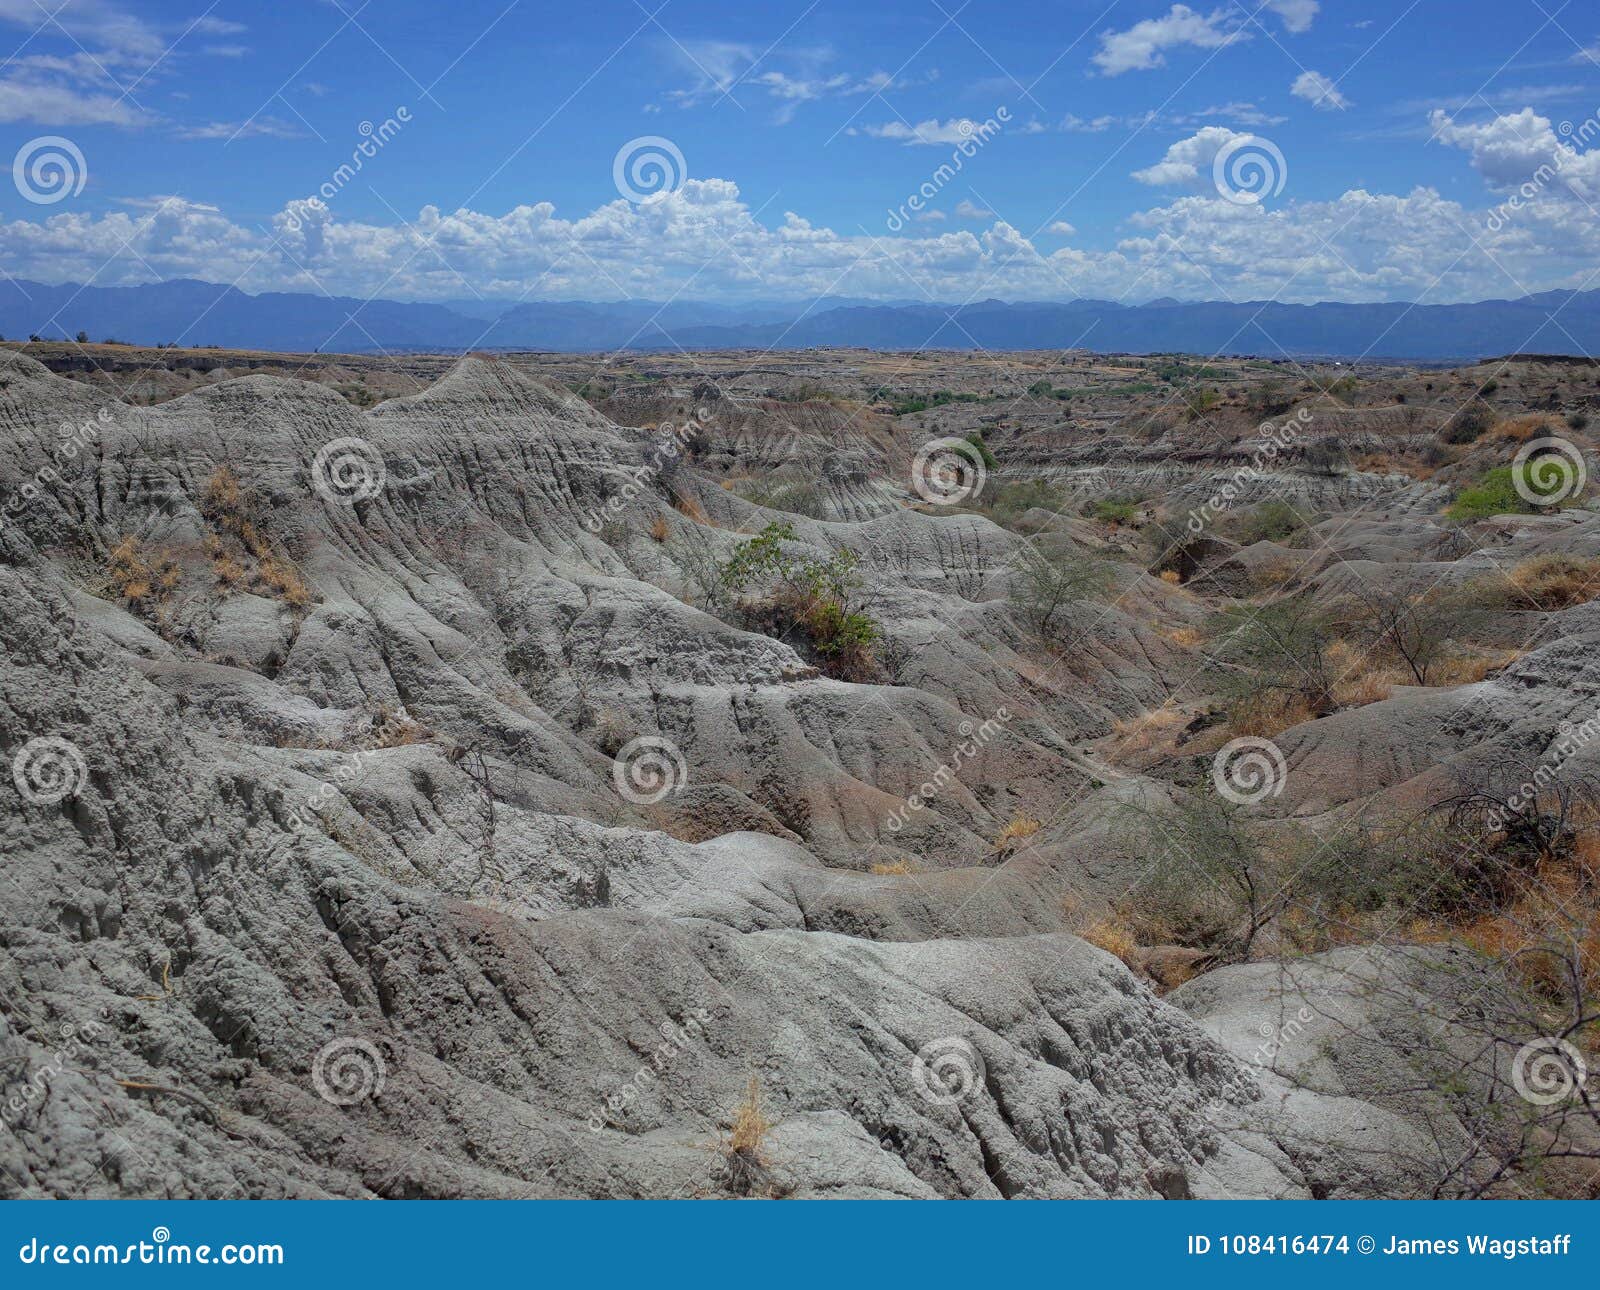 los hoyos, the grey desert, part of tatacoa desert